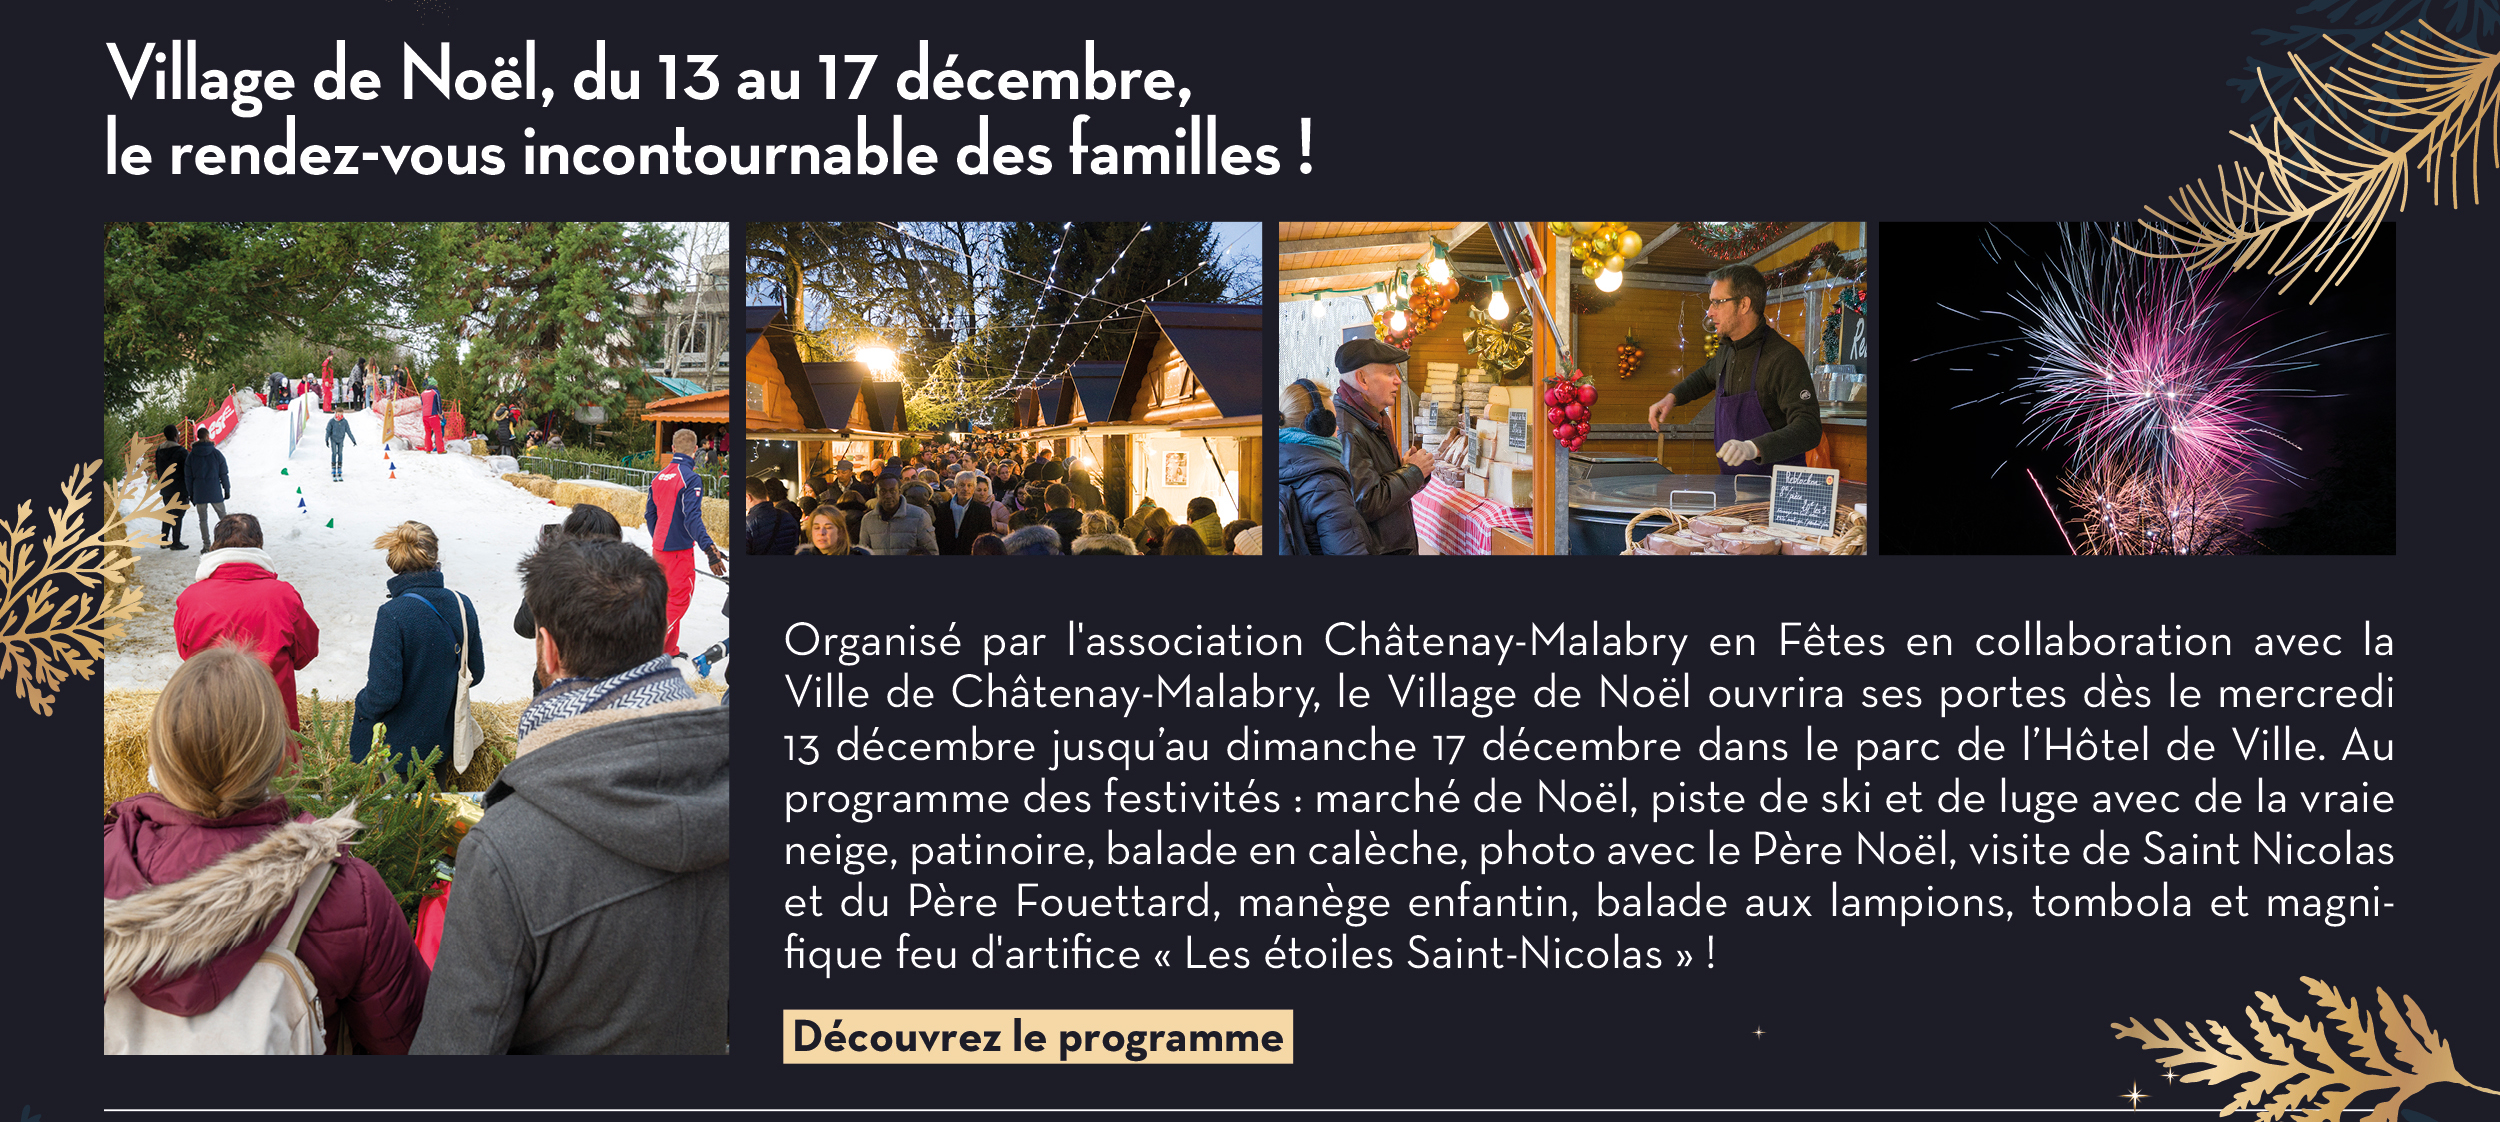 Village de Noël, du 13 au 17 décembre